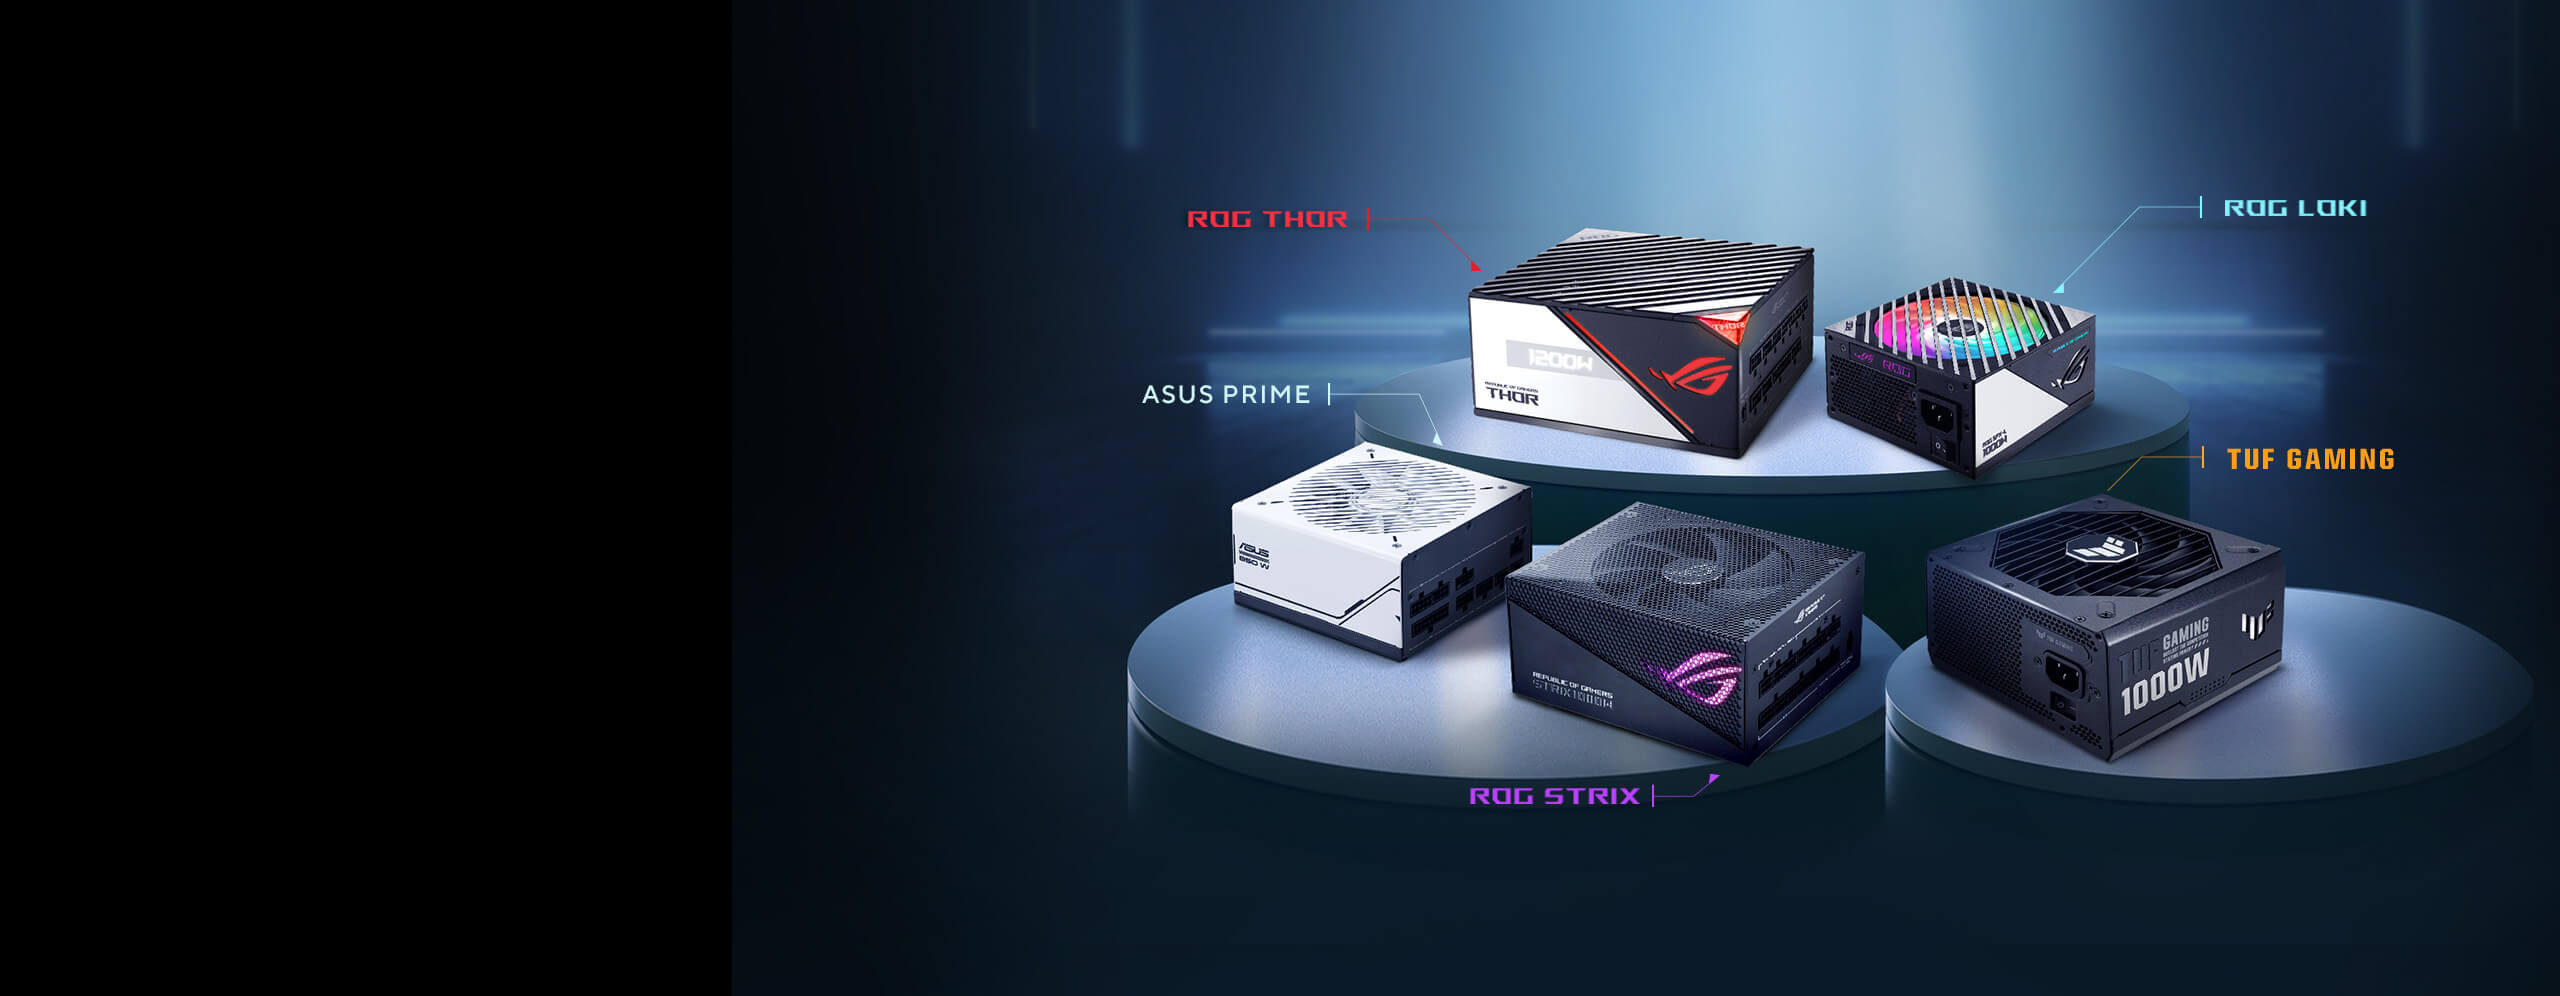 Aanbevolen voedingen voor de ASUS TUF Gaming Radeon RX 7600 XT videokaart